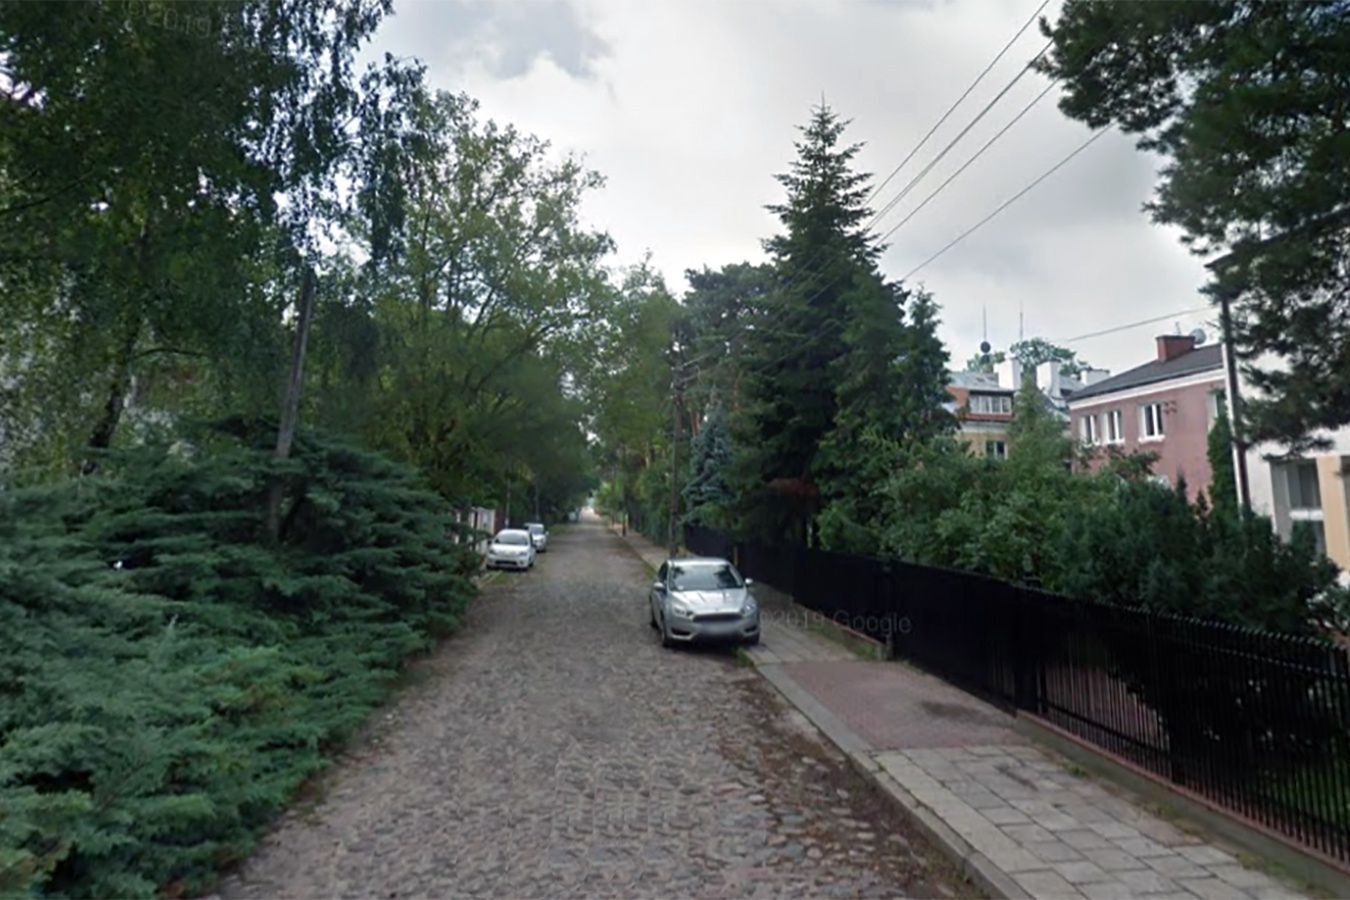 Makabra w Wawrze. 79-latek pobity na śmierć we własnym domu